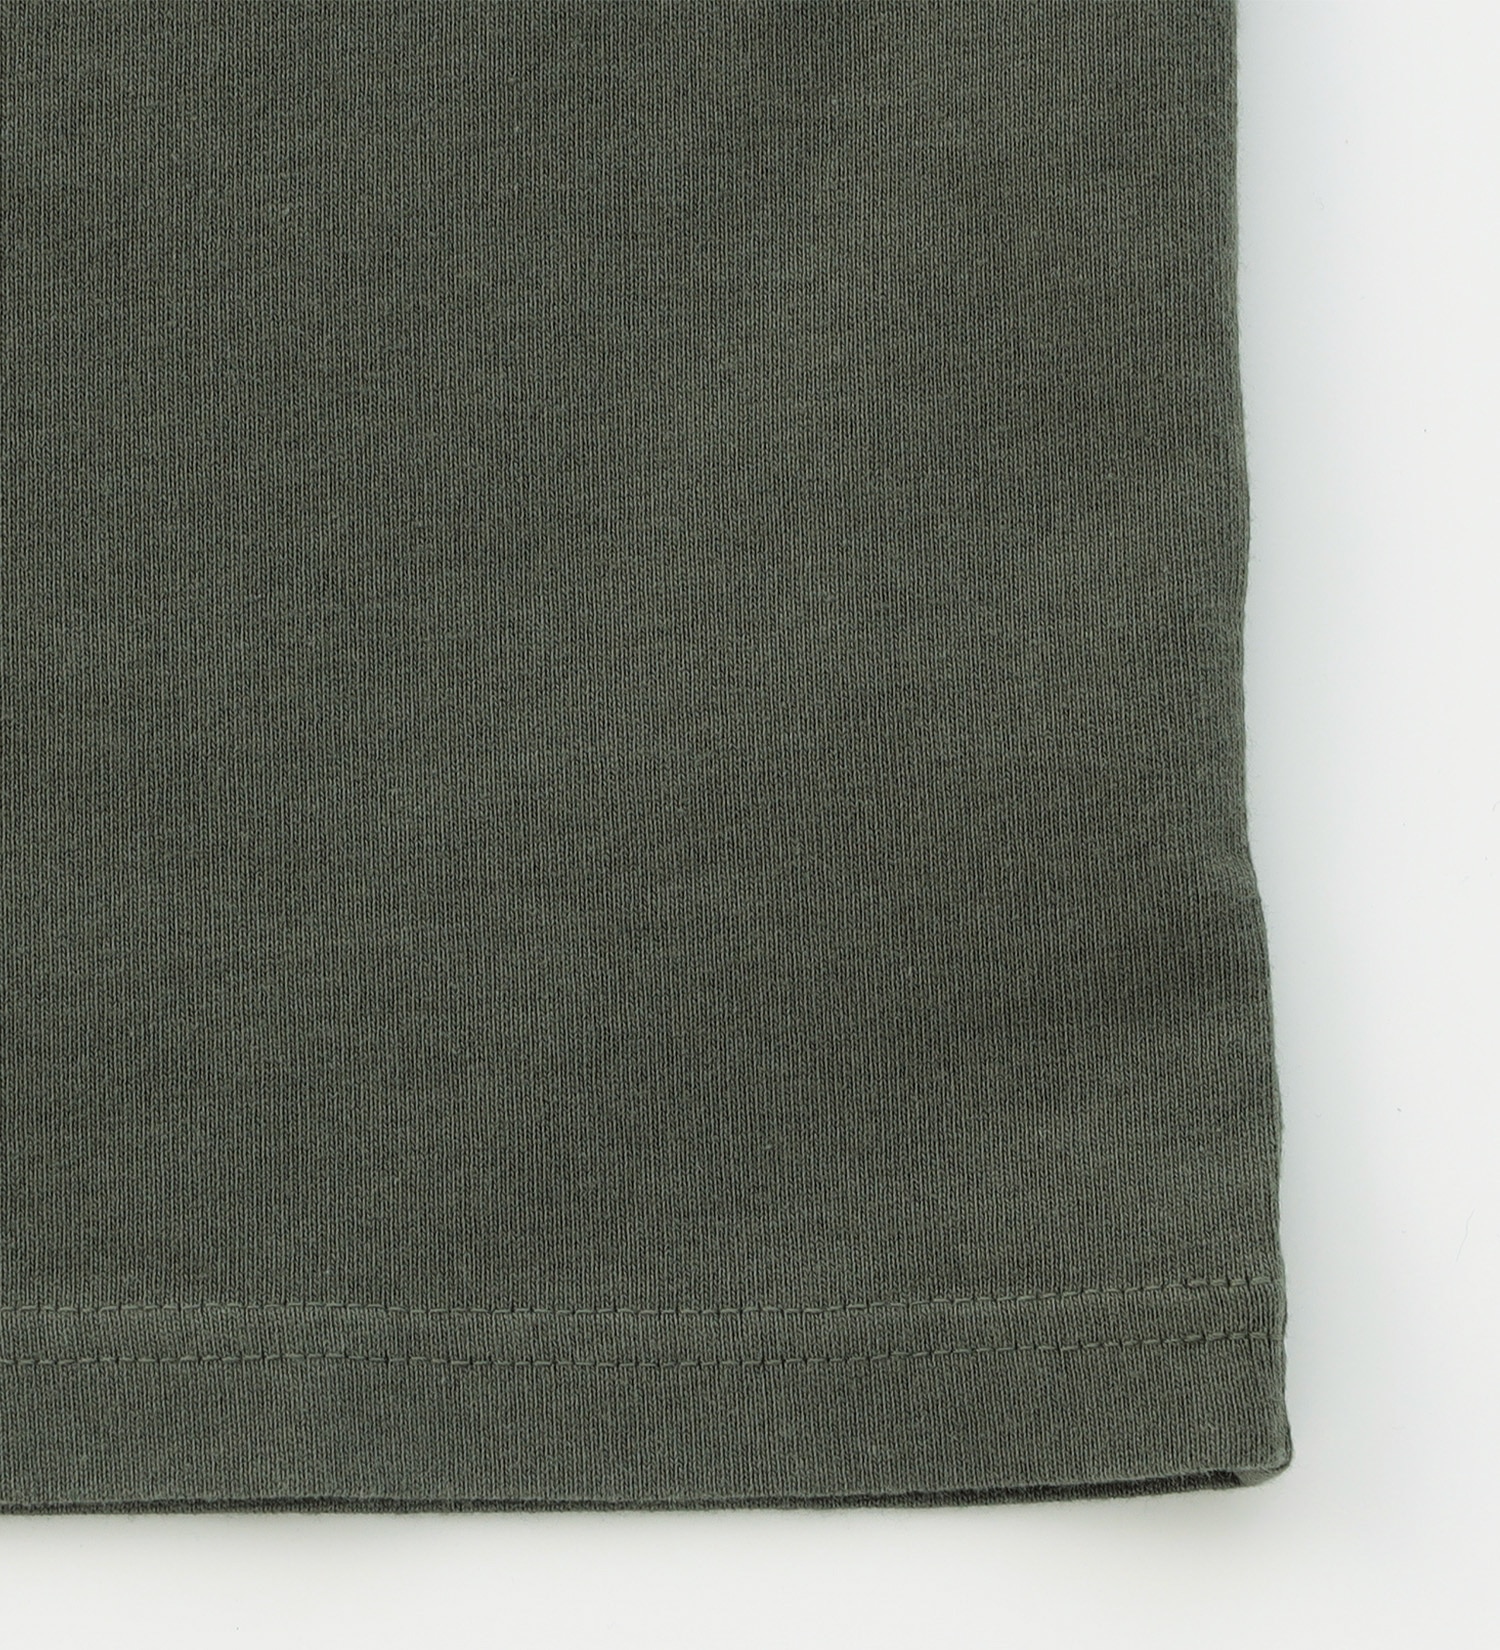 EDWIN(エドウイン)の【BLACKFRIDAY】ポケットロゴTシャツ 半袖【アウトレット店舗・WEB限定】|トップス/Tシャツ/カットソー/メンズ|オリーブ